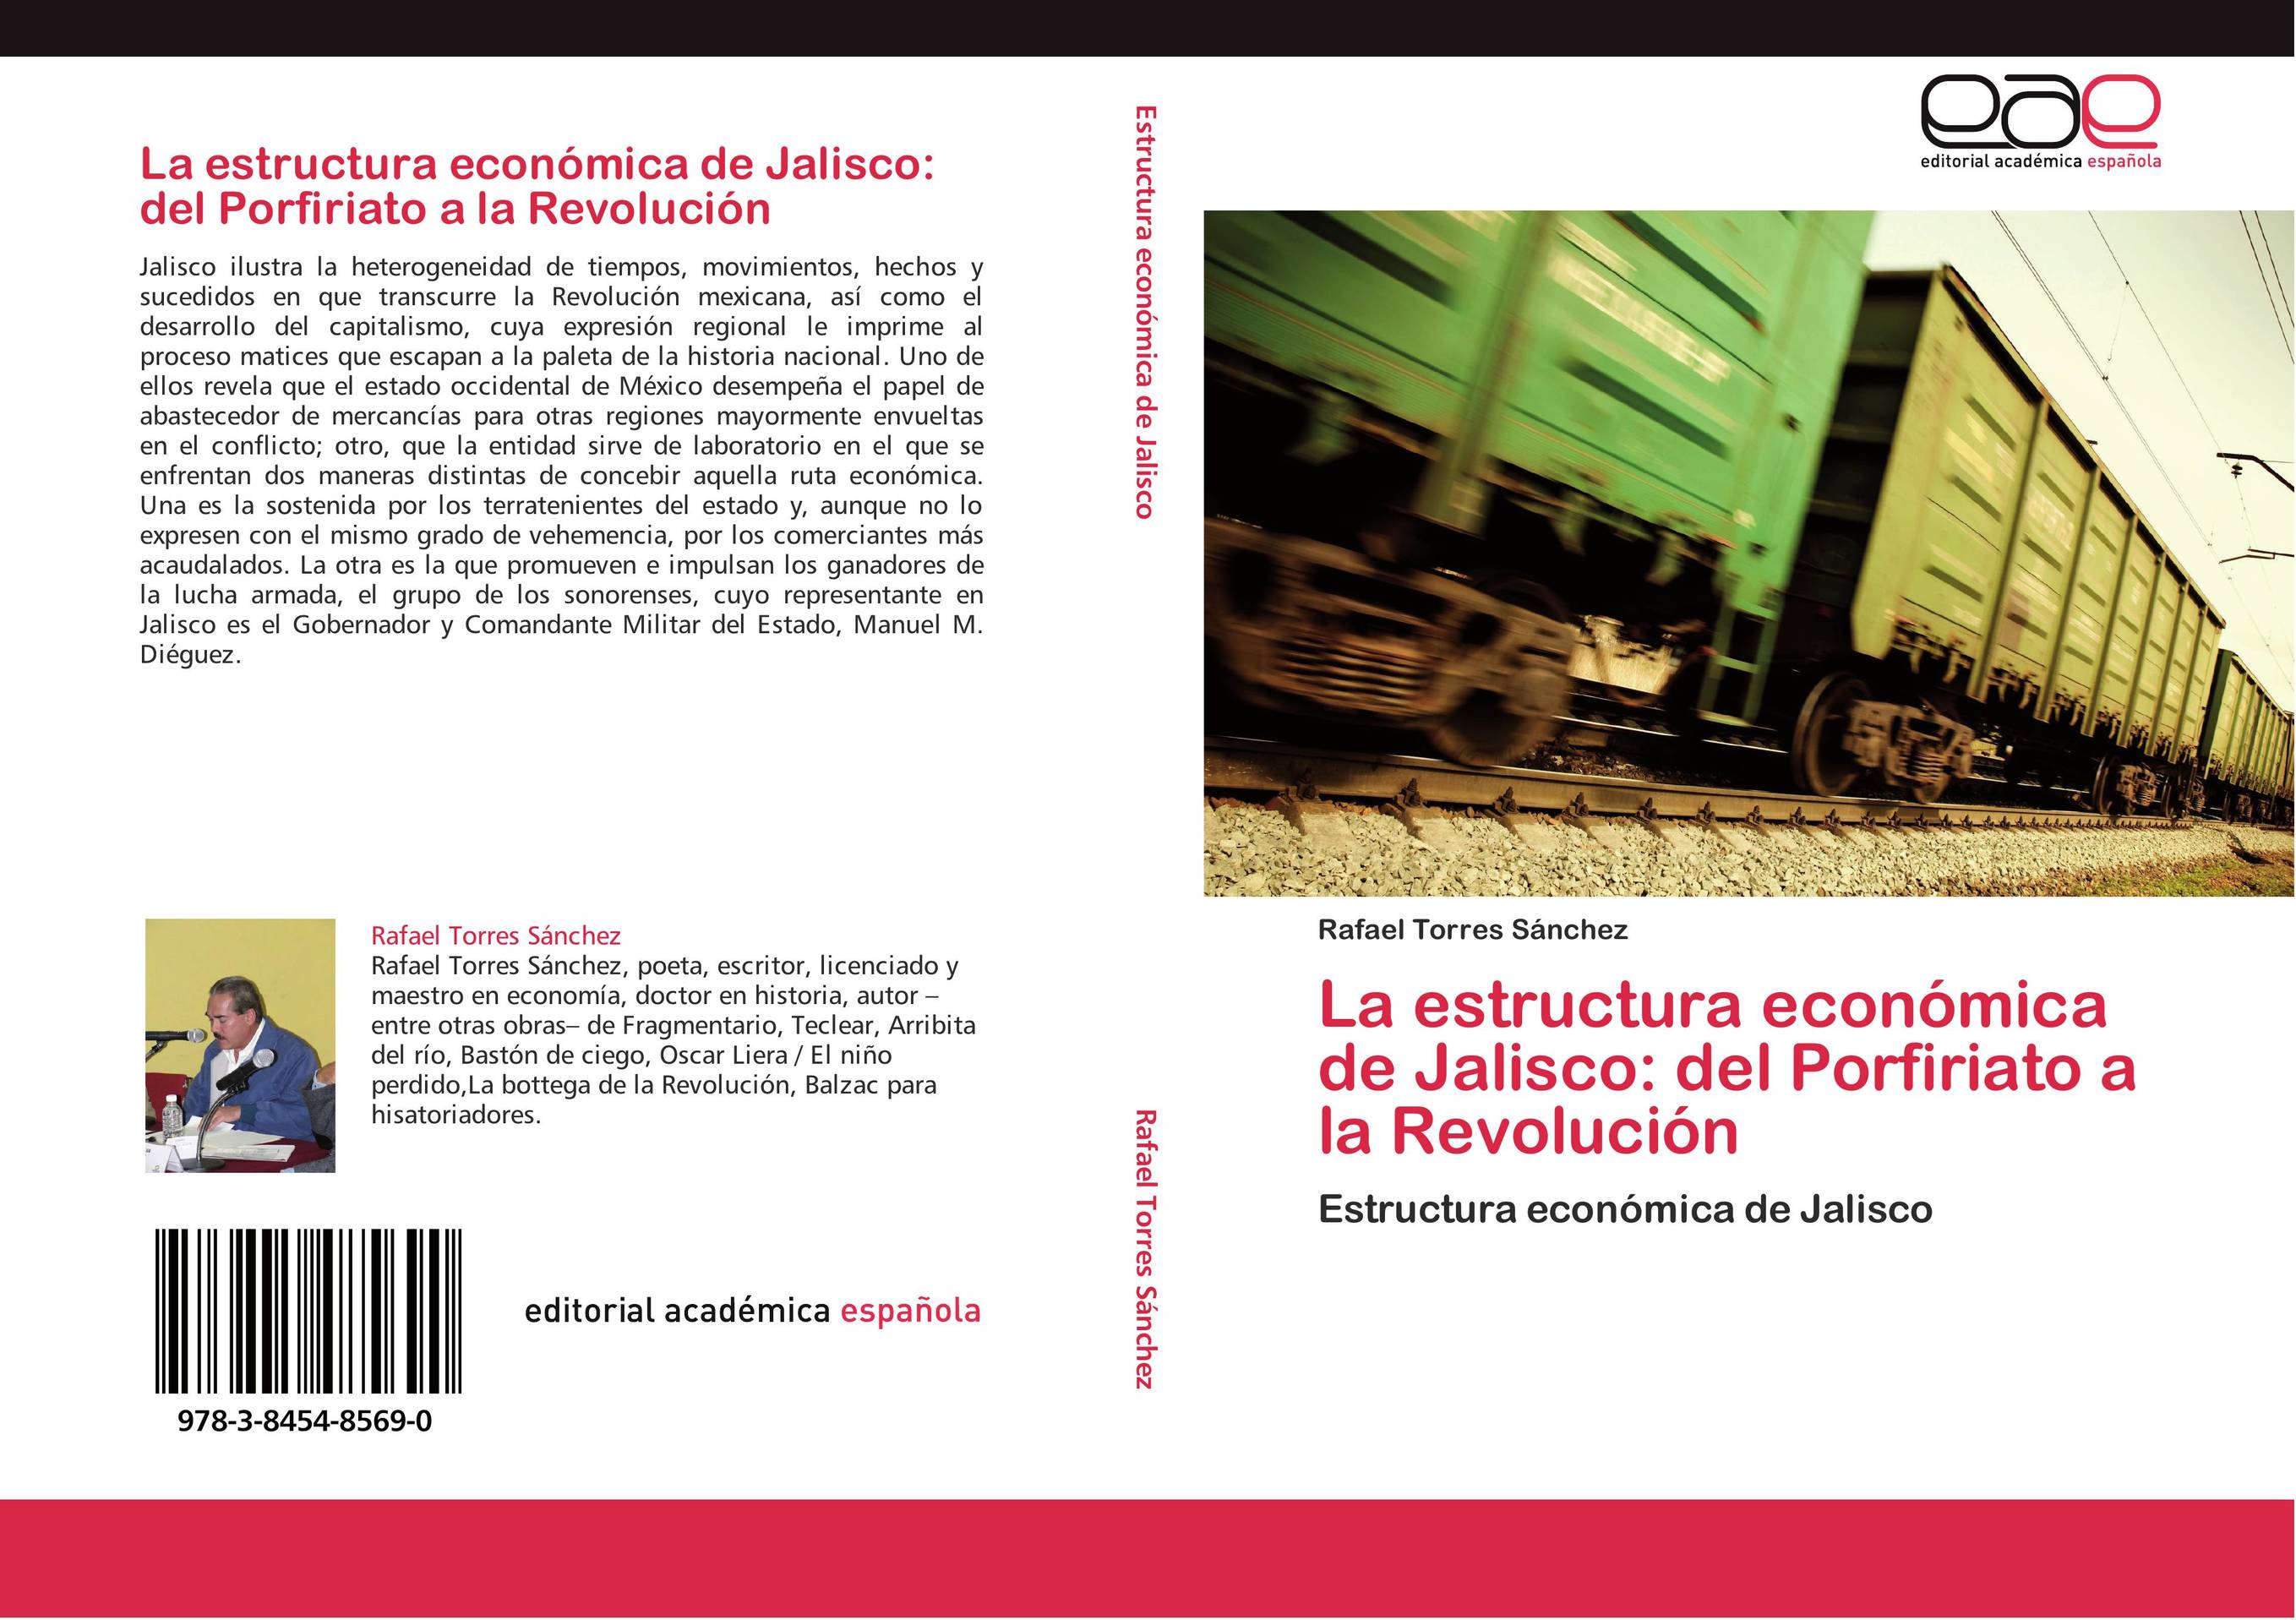 La estructura económica de Jalisco: del Porfiriato a la Revolución